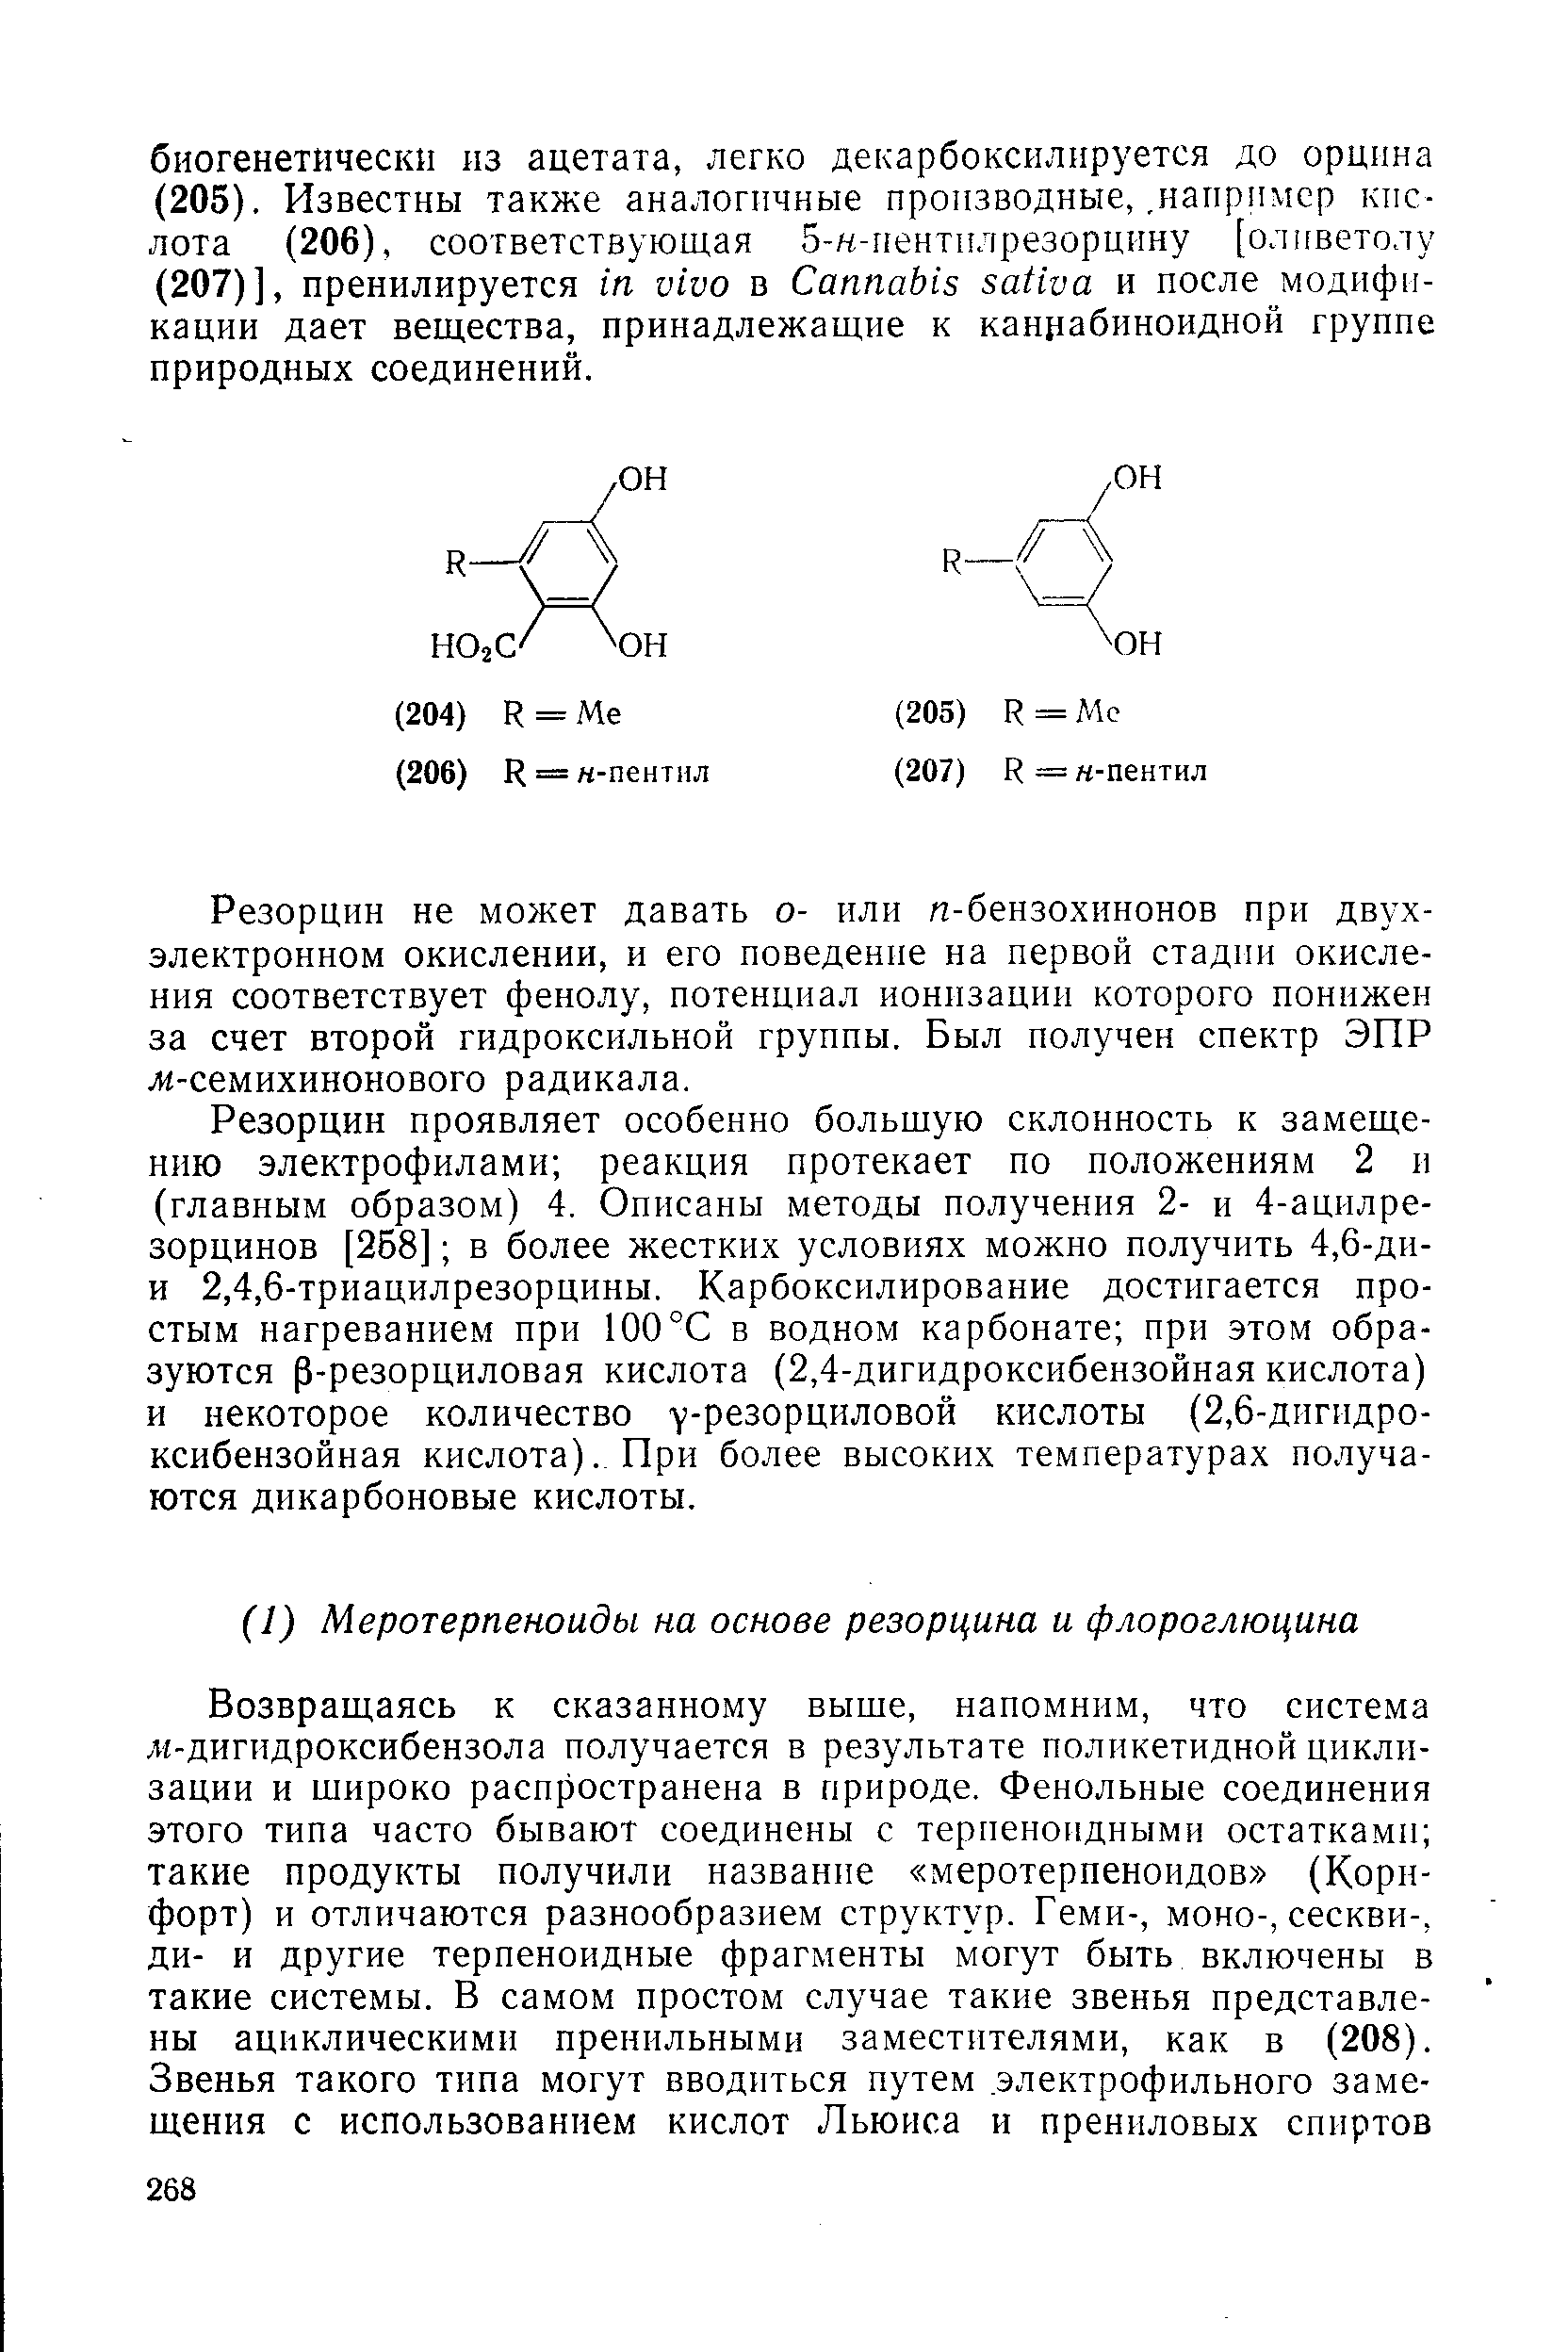 Резорцин не может давать о- или п-бензохинонов при двухэлектронном окислении, и его поведение на первой стадии окисления соответствует фенолу, потенциал ионизации которого понижен за счет второй гидроксильной группы. Был получен спектр ЭПР л-семихинонового радикала.